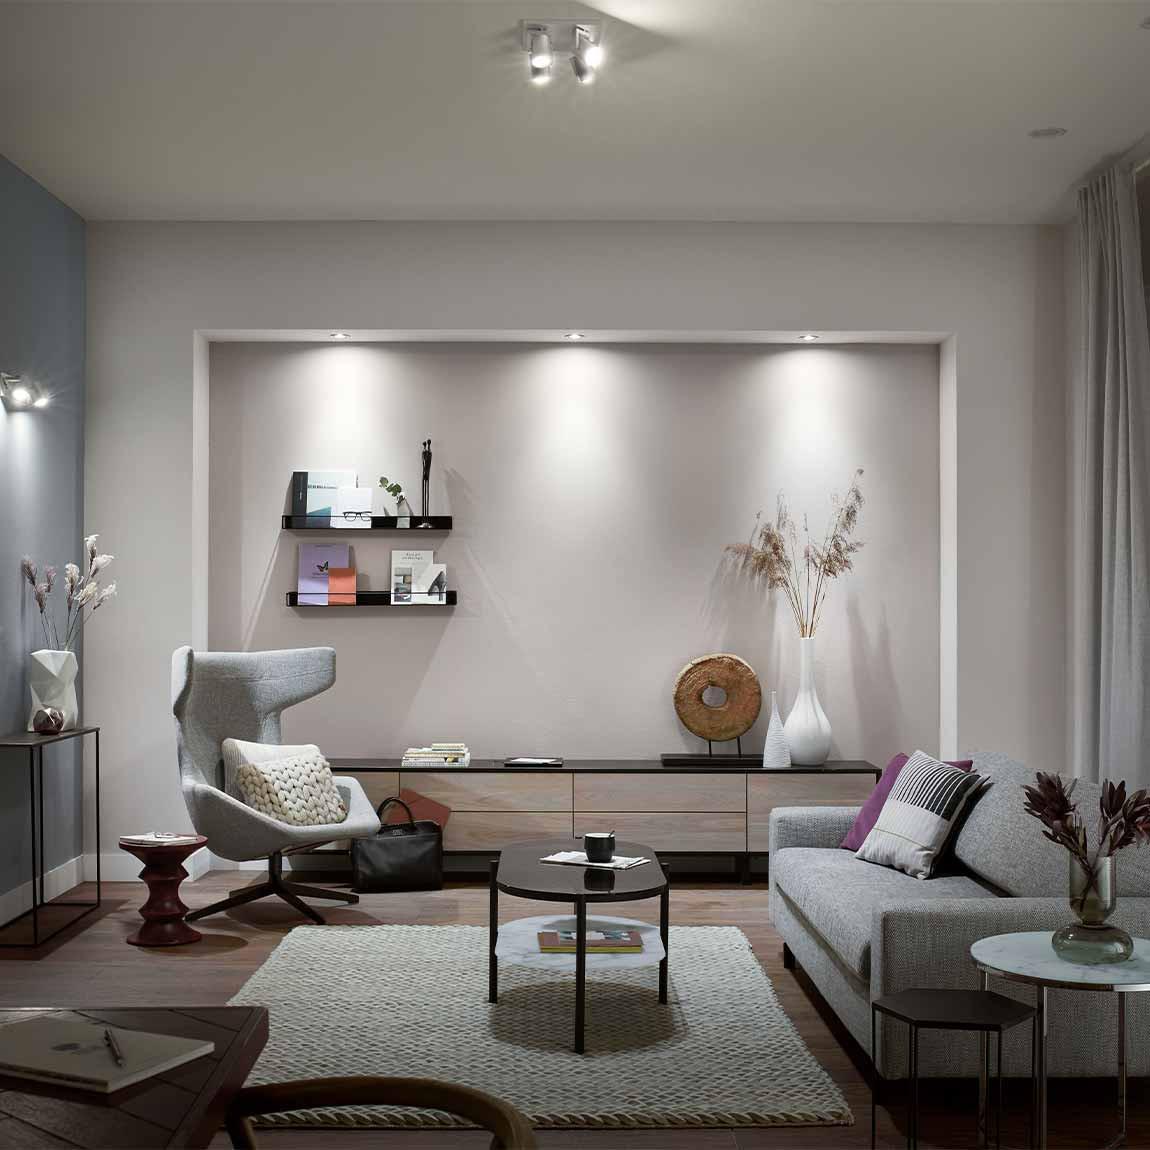 Philips Hue White & Color Ambiance Centura Einbauspot 3 flg. - schwarz - Lifestyle Wohnzimmer weißes Licht